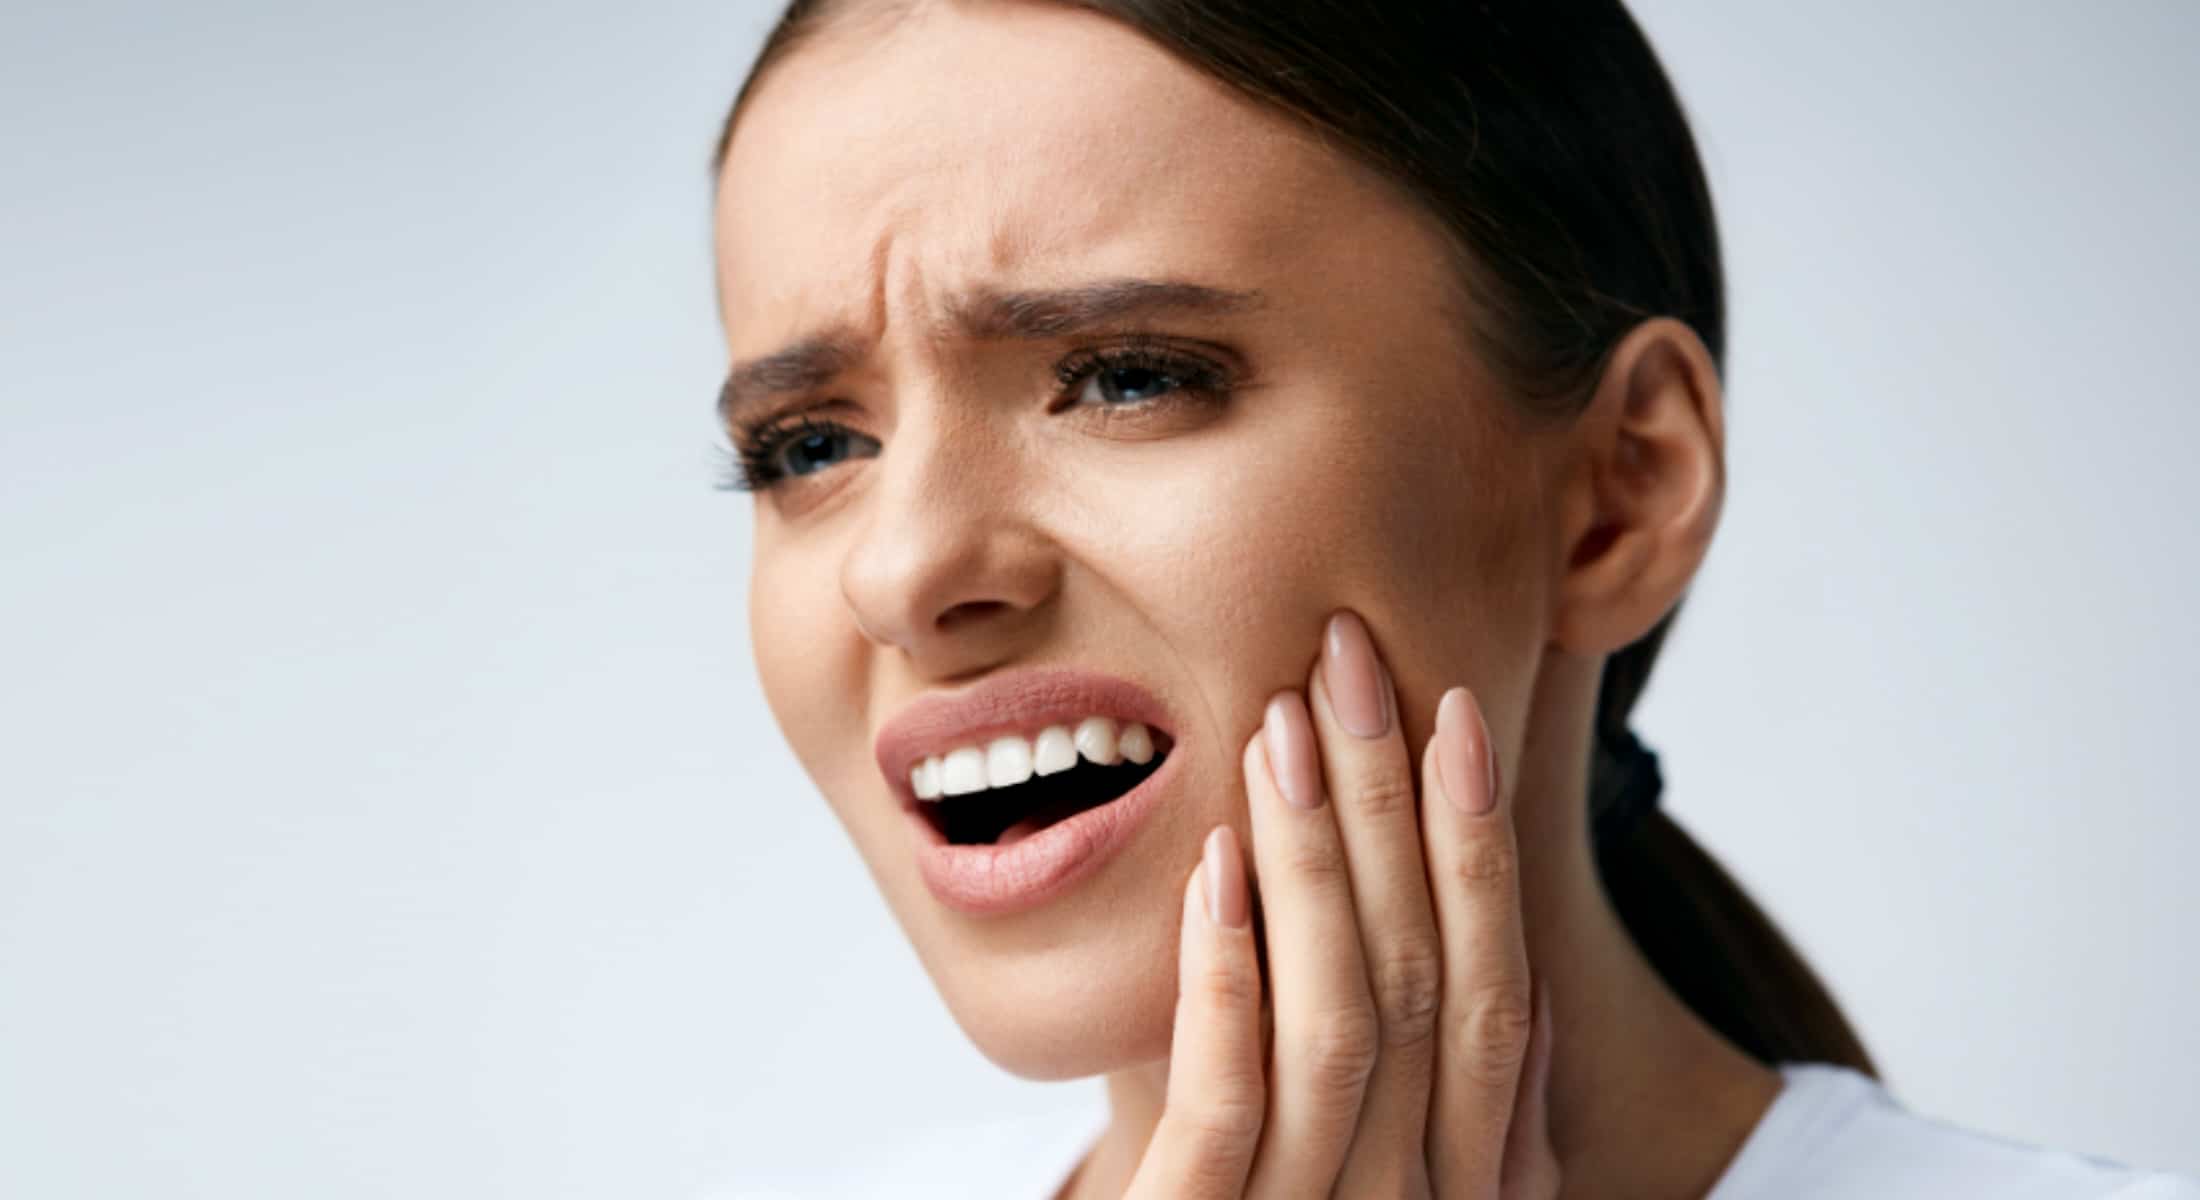 Που μπορεί να οφείλονται οι πόνοι στη περιοχή του στόματος;